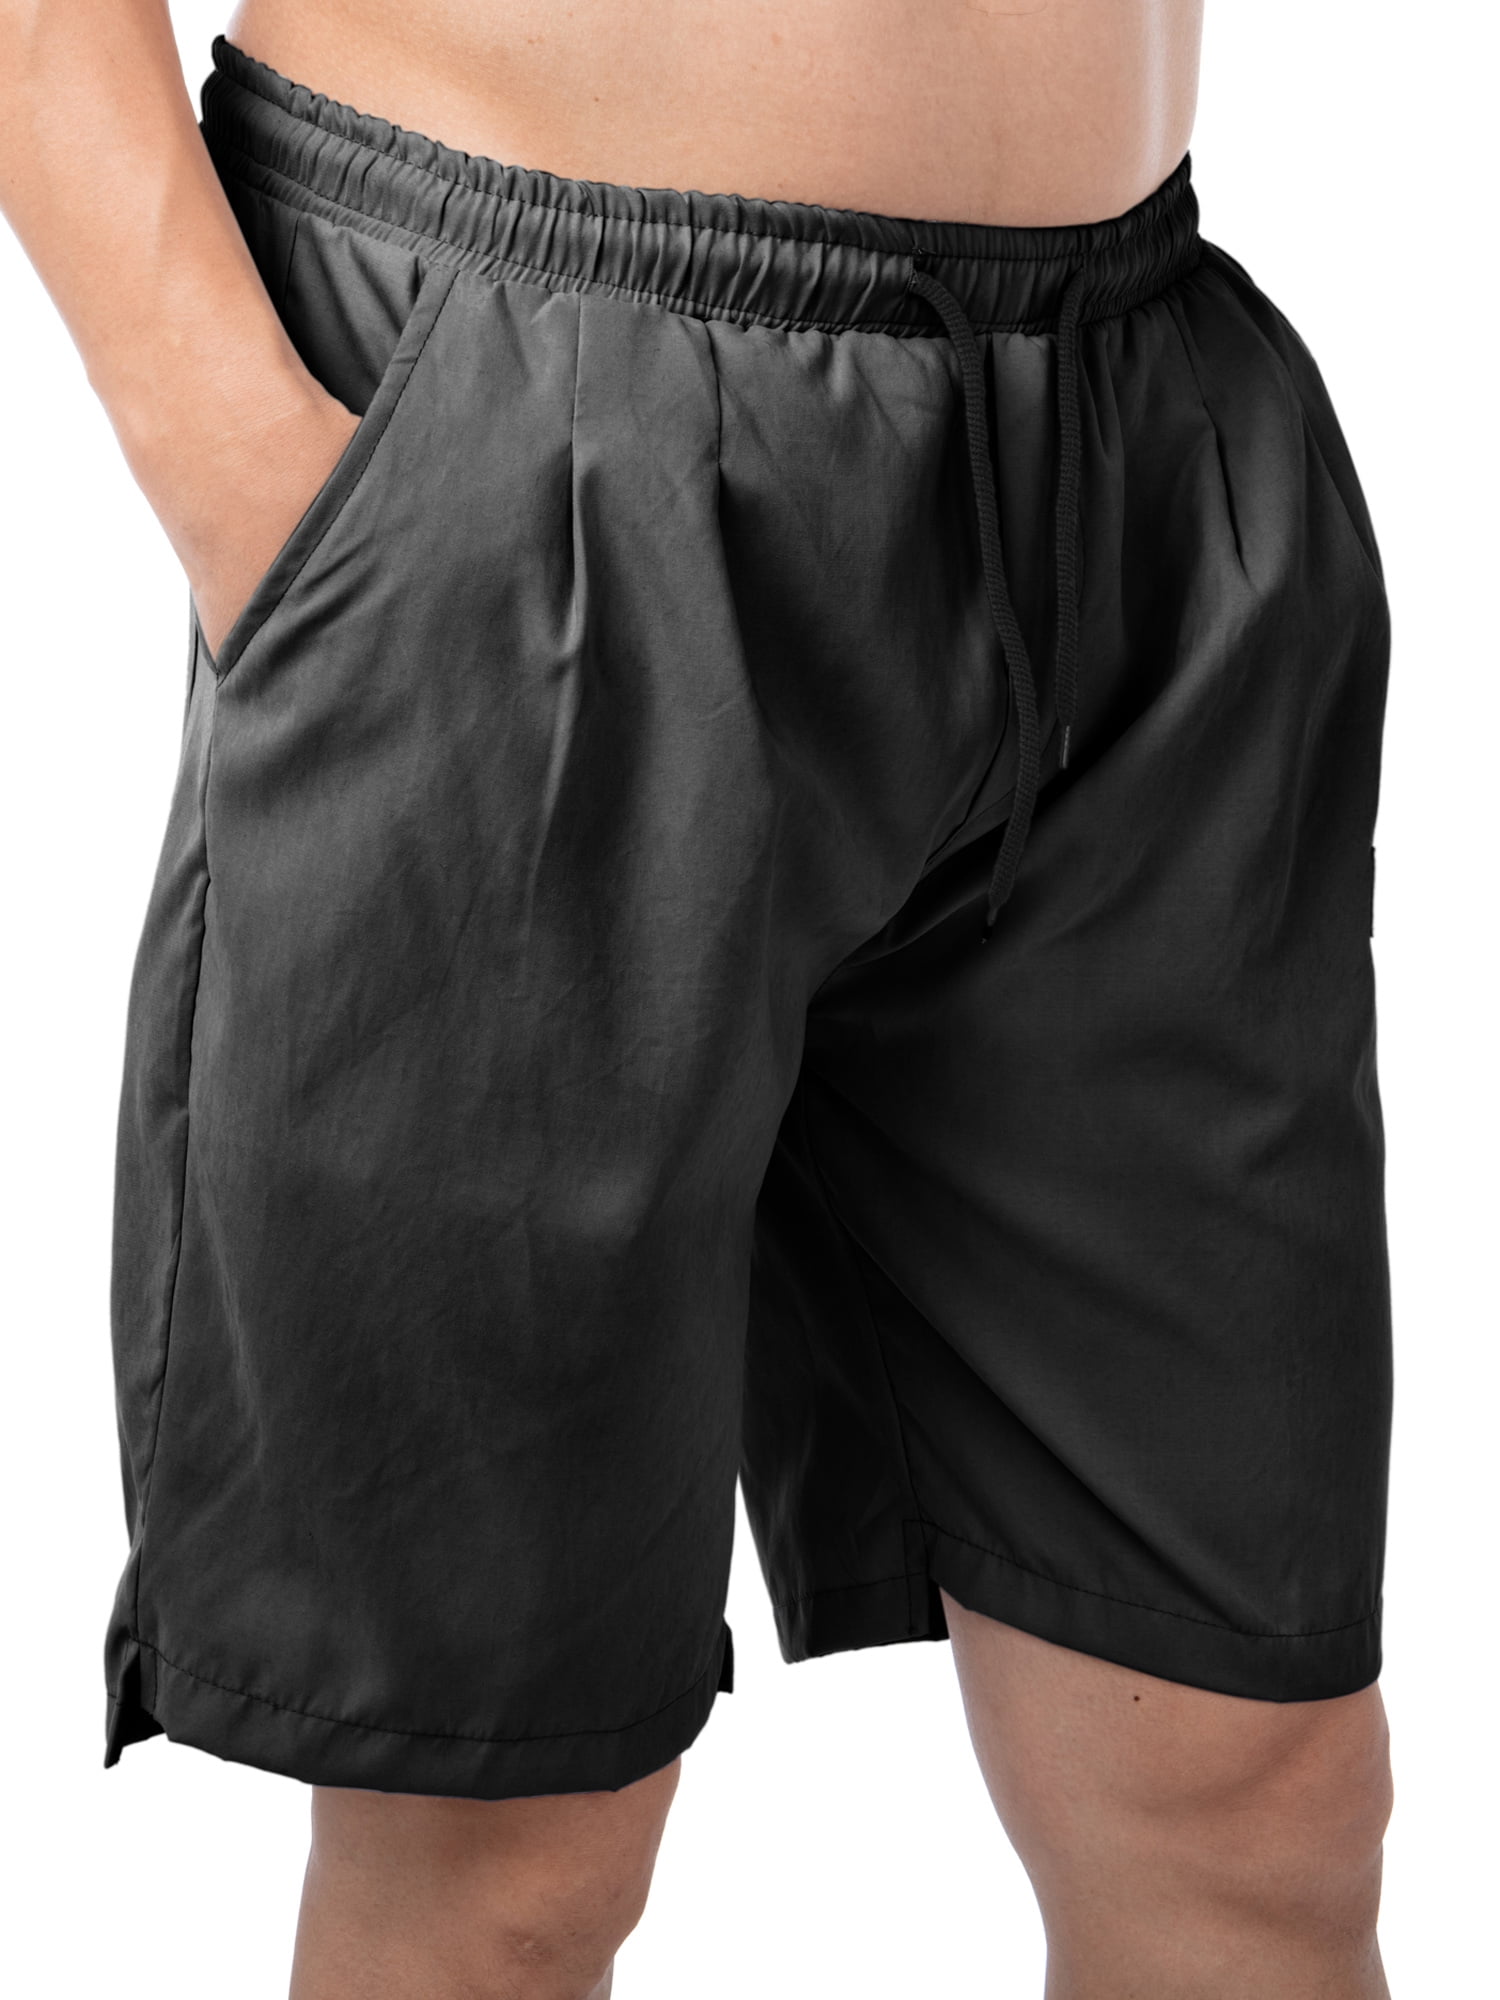 LELINTA Mens Casual Slim Cargo Shorts Big and Tall Shorts with Pockets ...